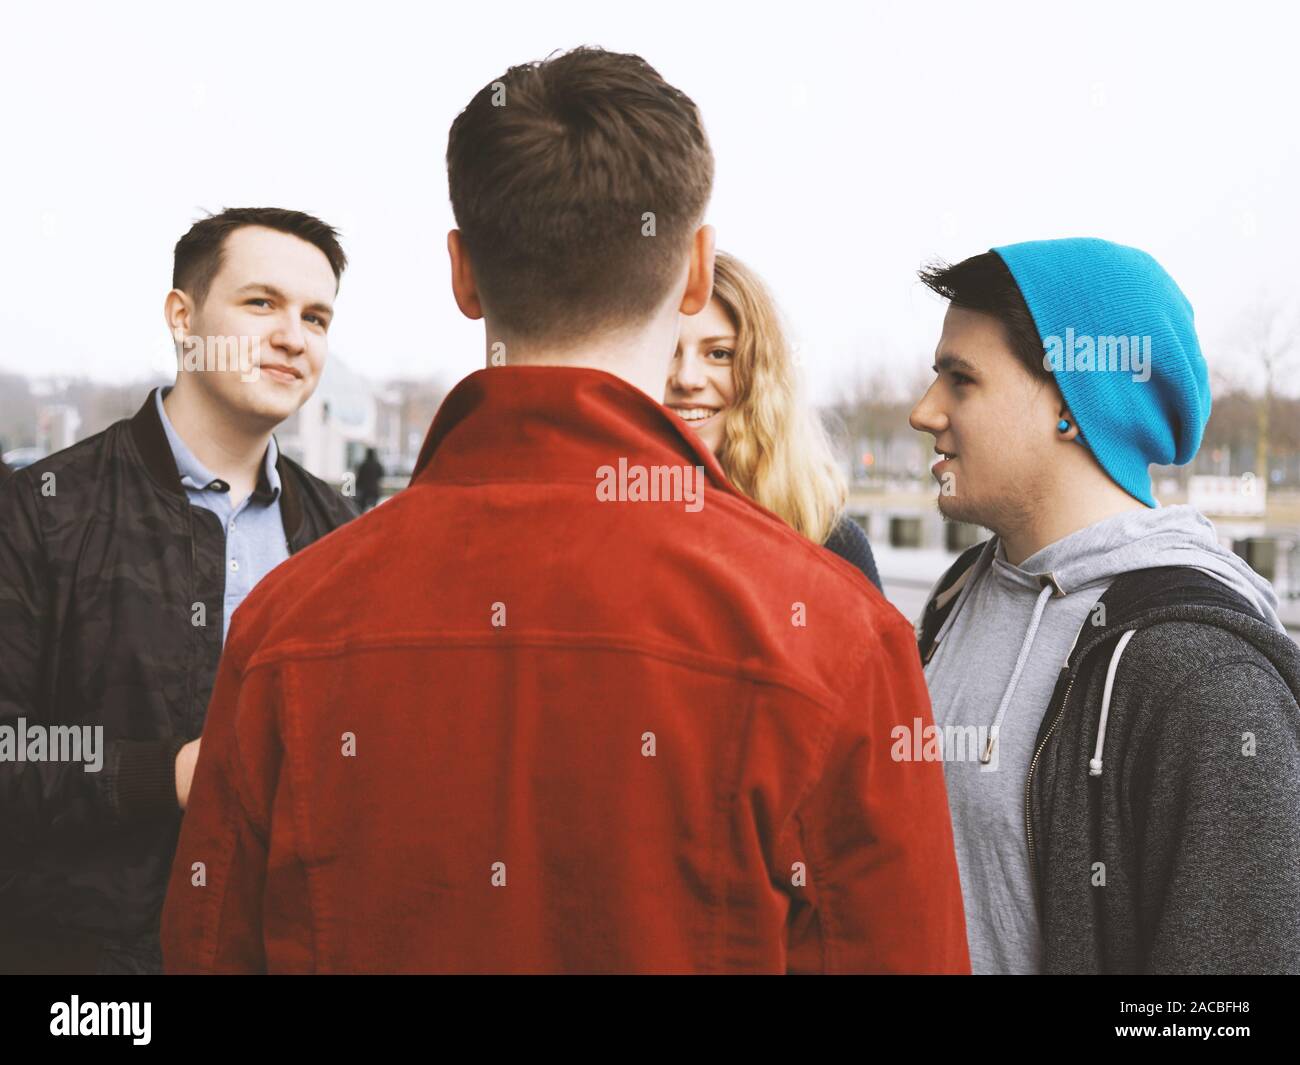 Gruppe von vier jungen Teenager Freunde sprechen und gemeinsam lachen, ehrliche Menschen, gefilterten Bild Stockfoto